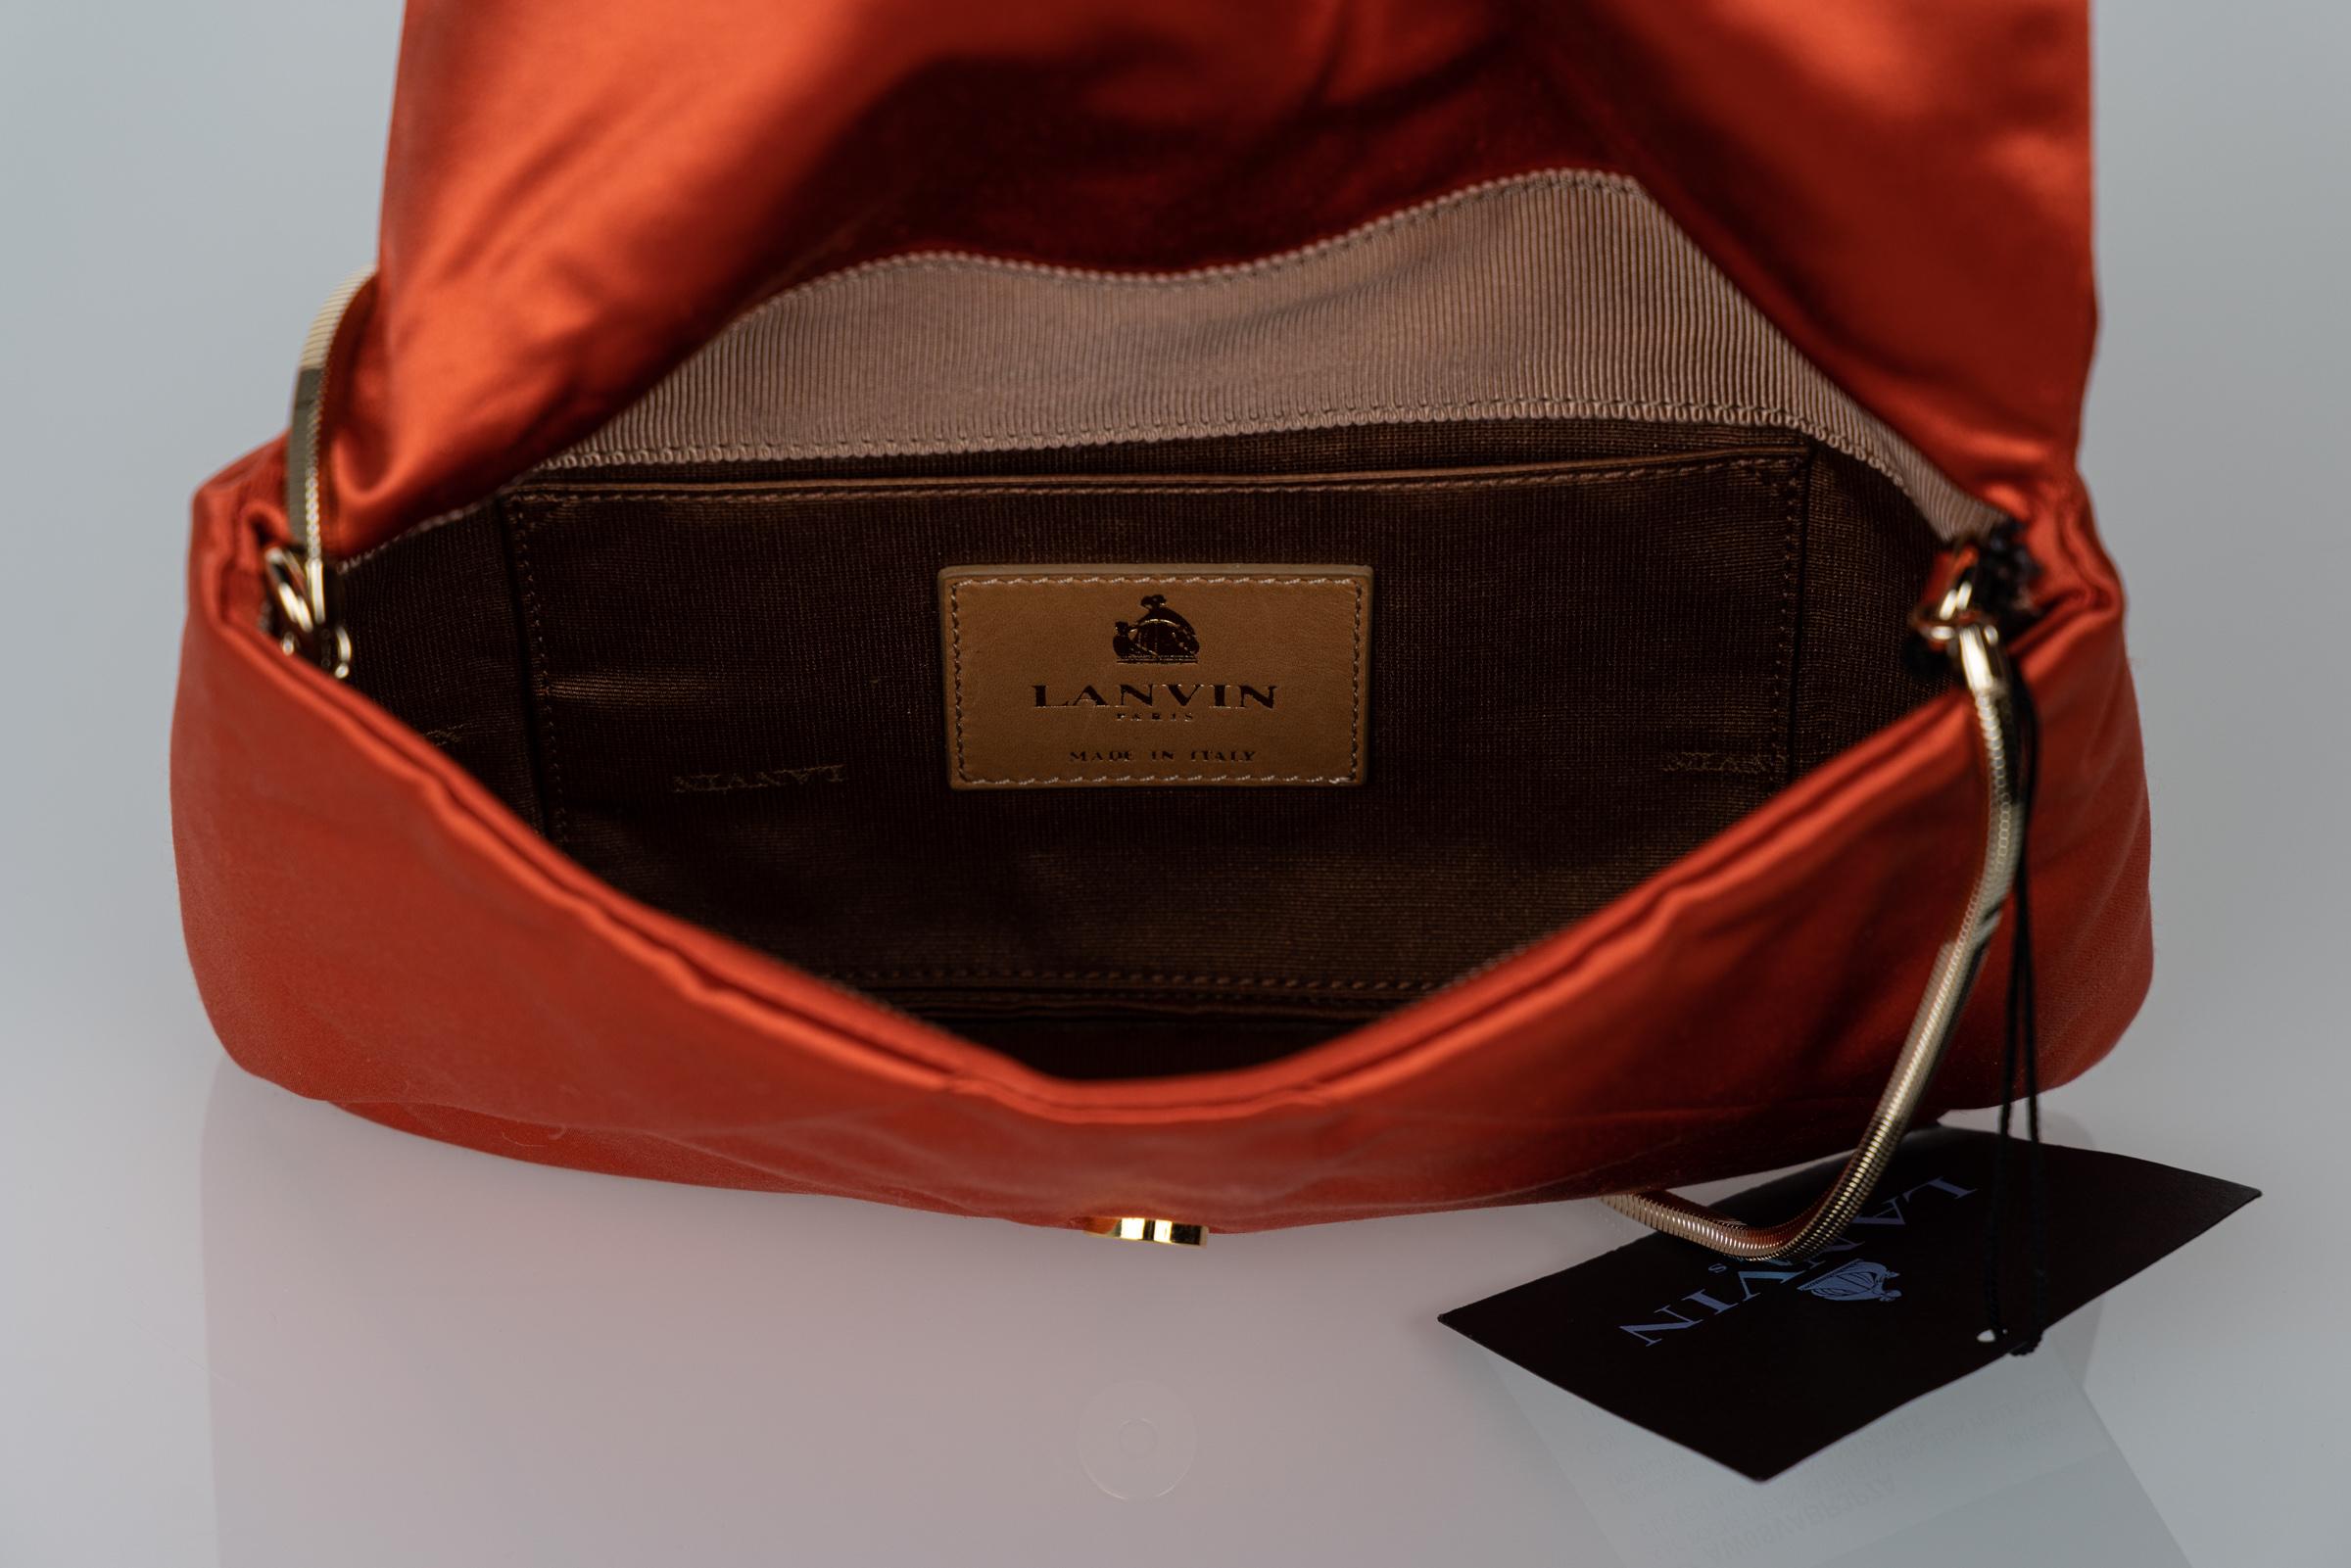 Lanvin Alber Elbaz Orange Satin Jewel Embellished Shoulder Bag/ Clutch 3